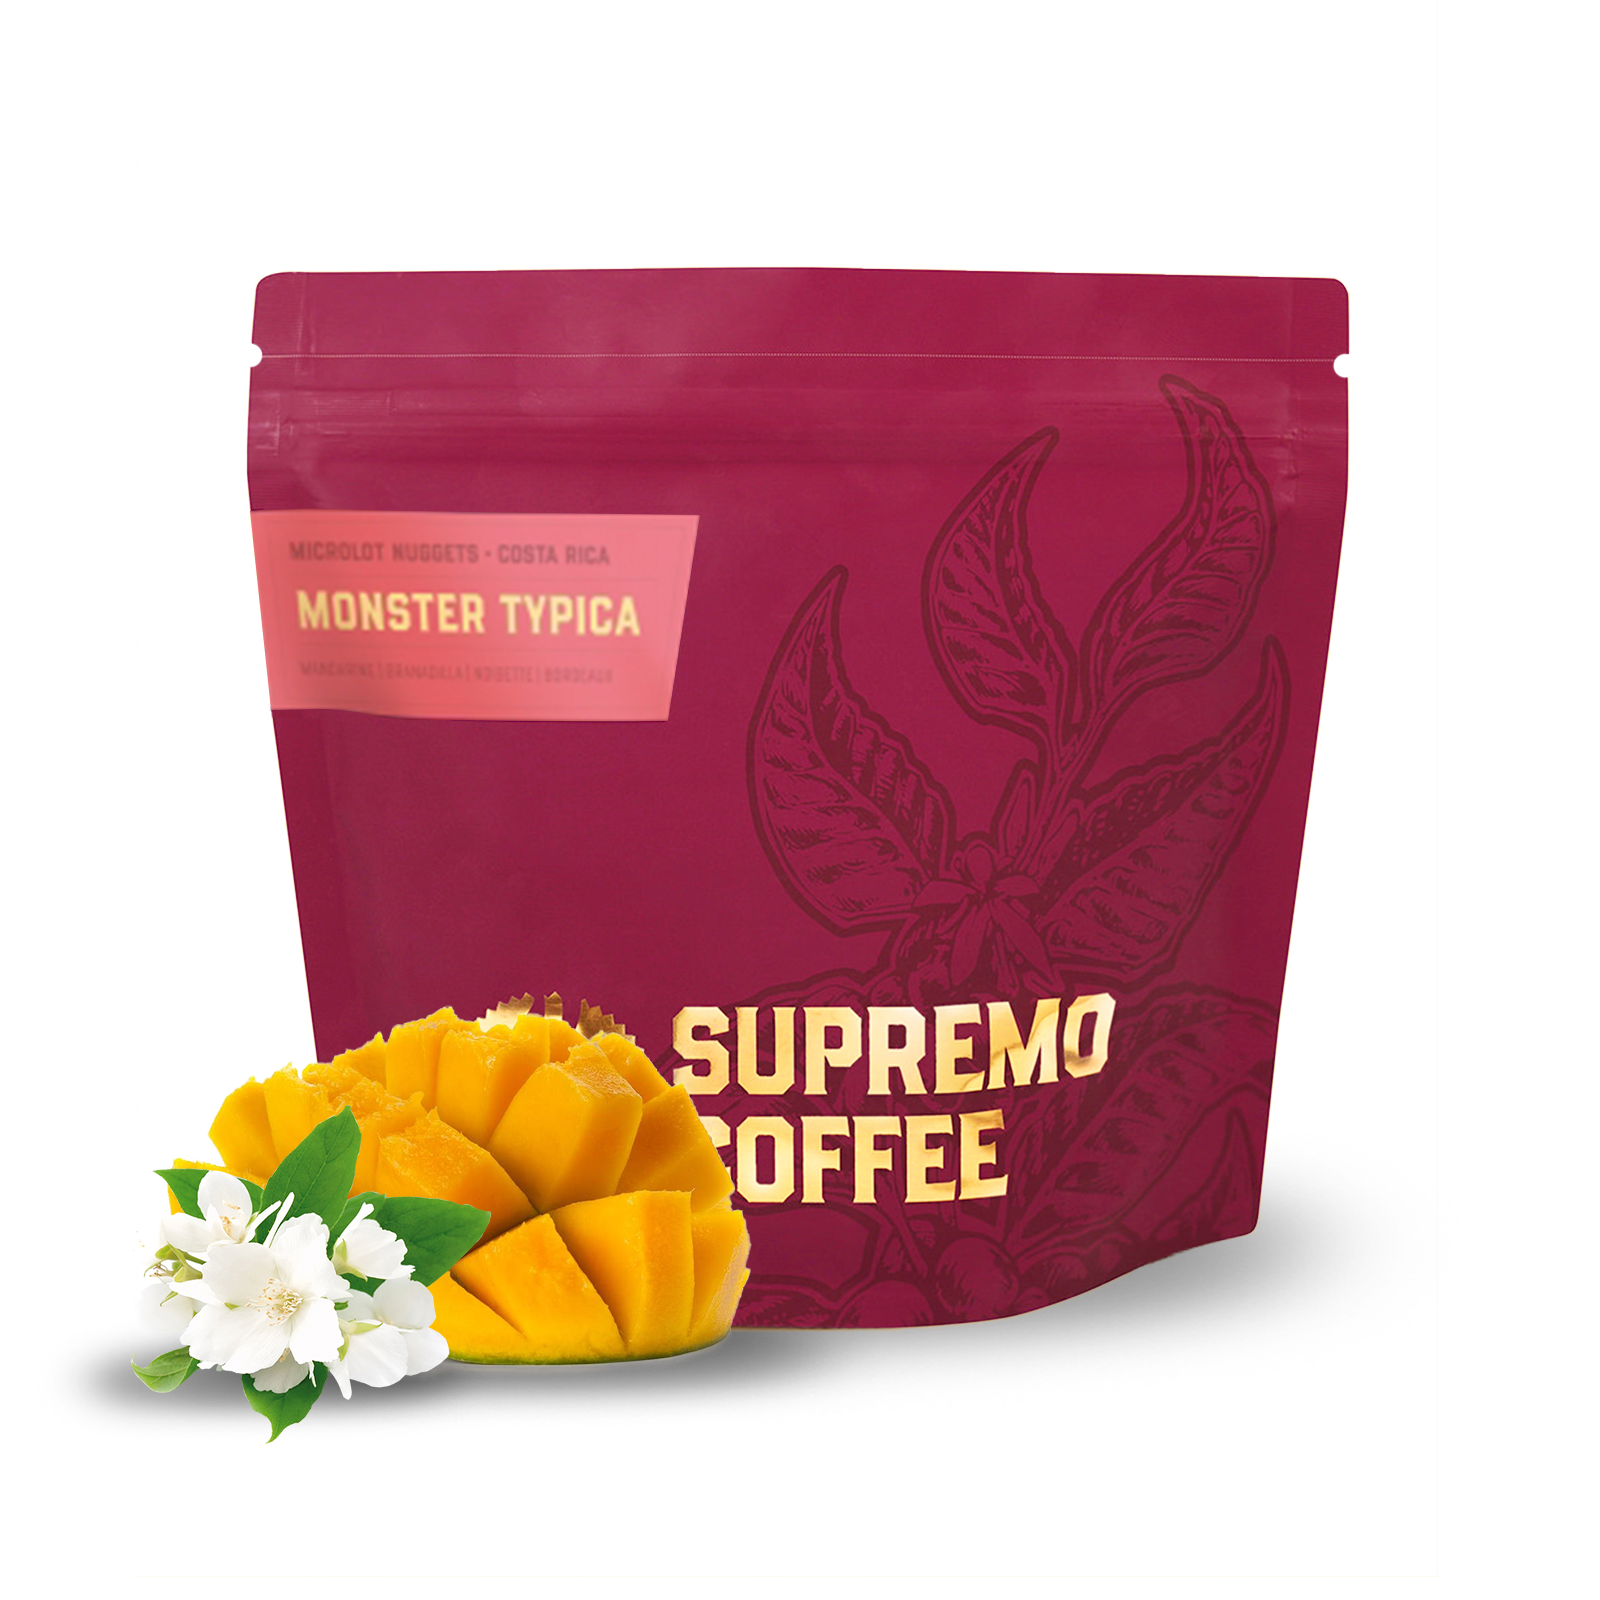 Výběrová káva Supremo Kostarika MONSTER TYPICA